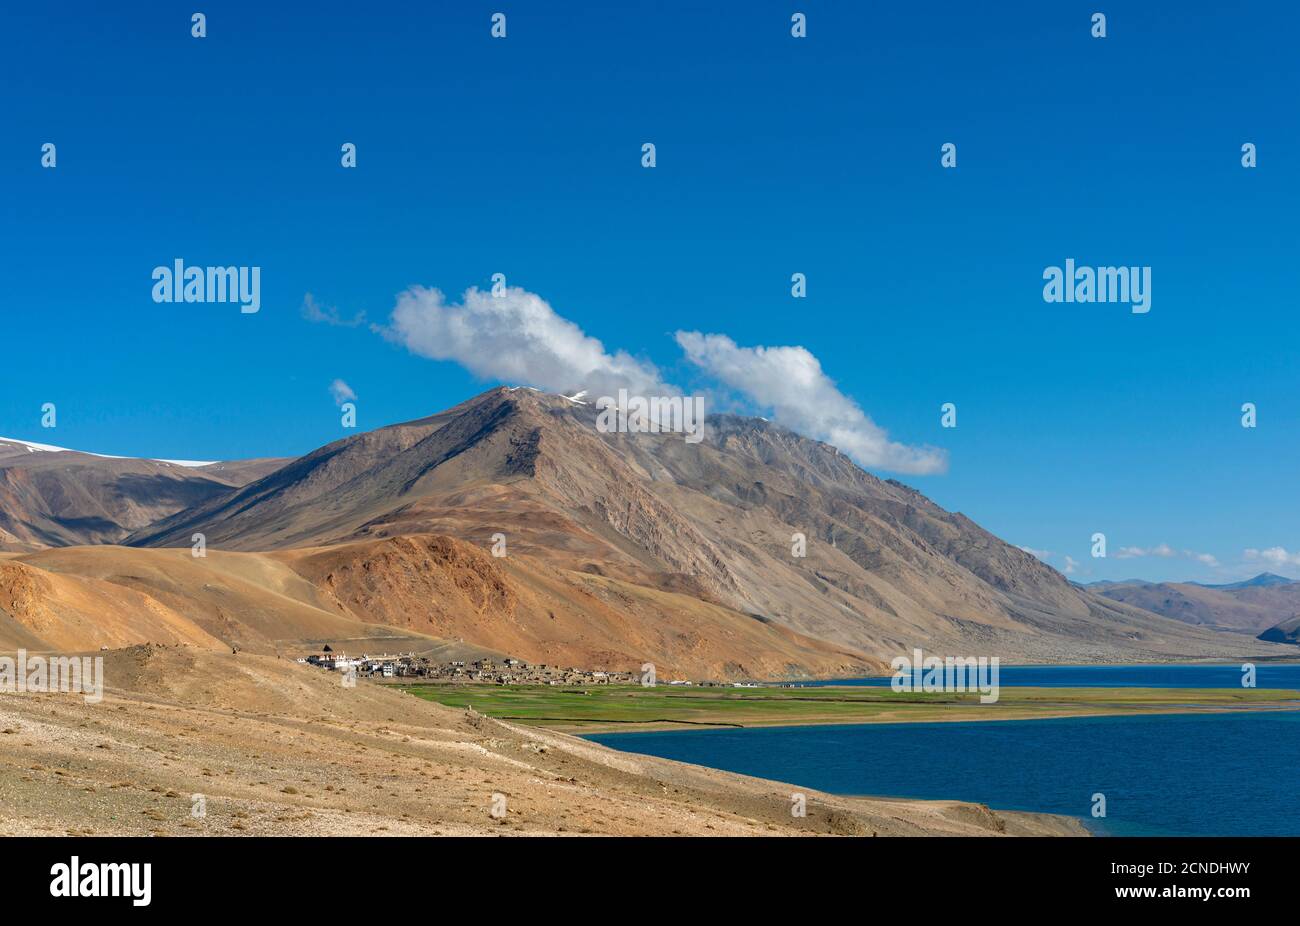 Mattina soleggiata a Tso Moriri o Lago di montagna, Ladakh, India. Il più grande dei laghi ad alta quota Foto Stock